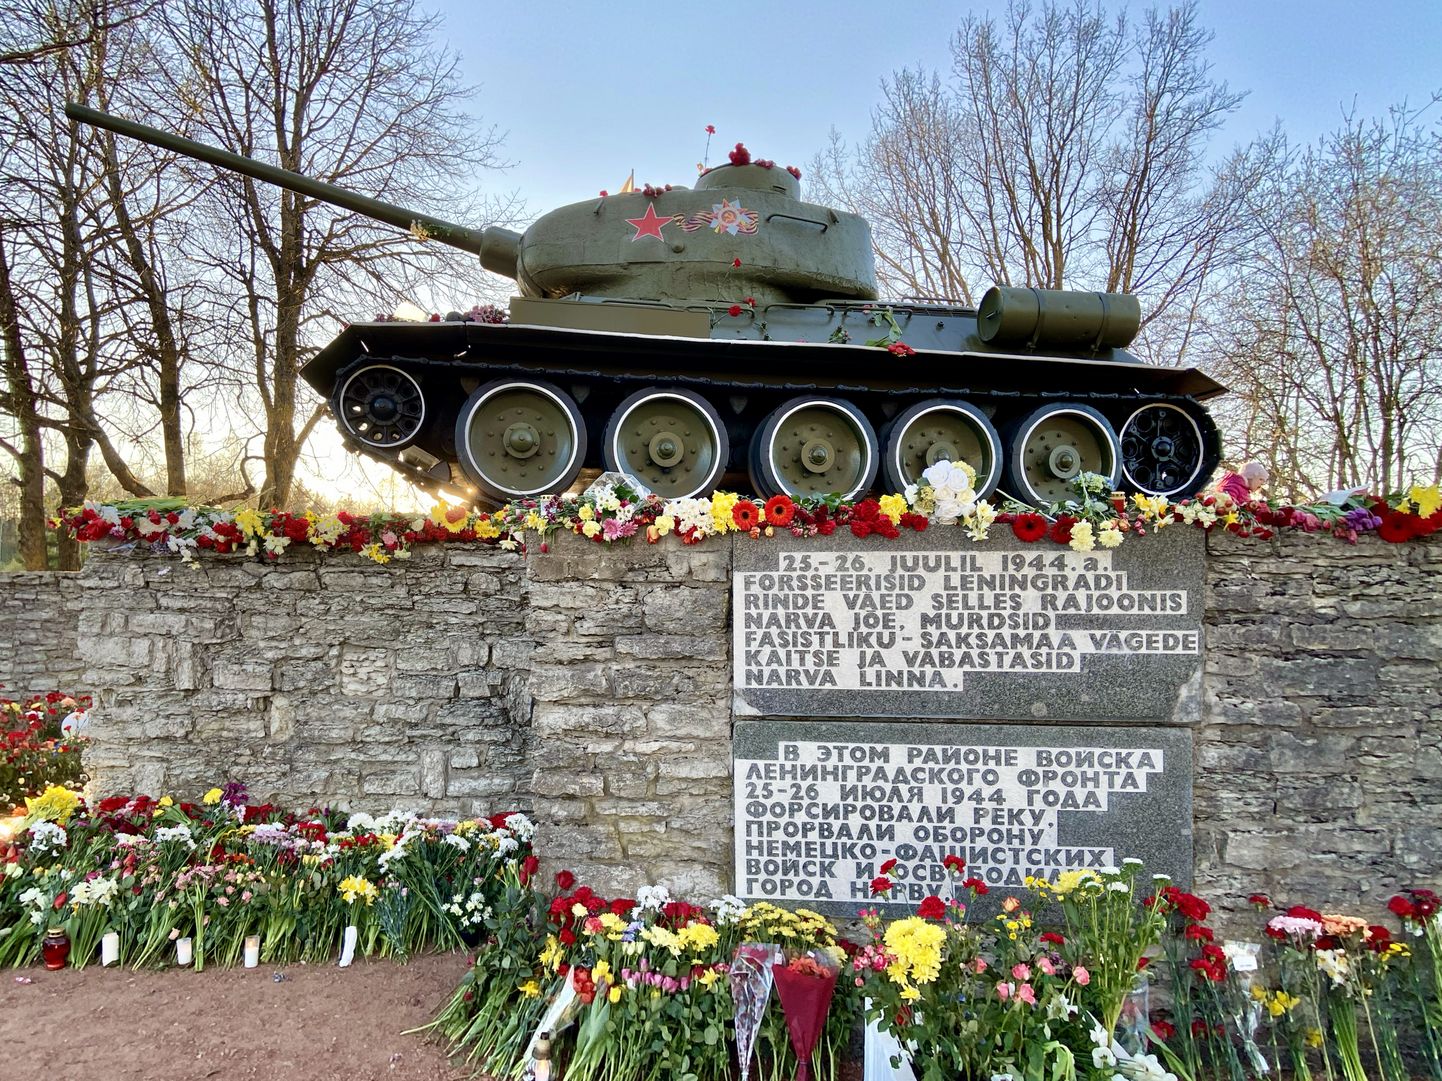 Советский танк Т-34 с красными звездами на башне становится все больше объектом особого местного культа и символом нарвской самобытности.